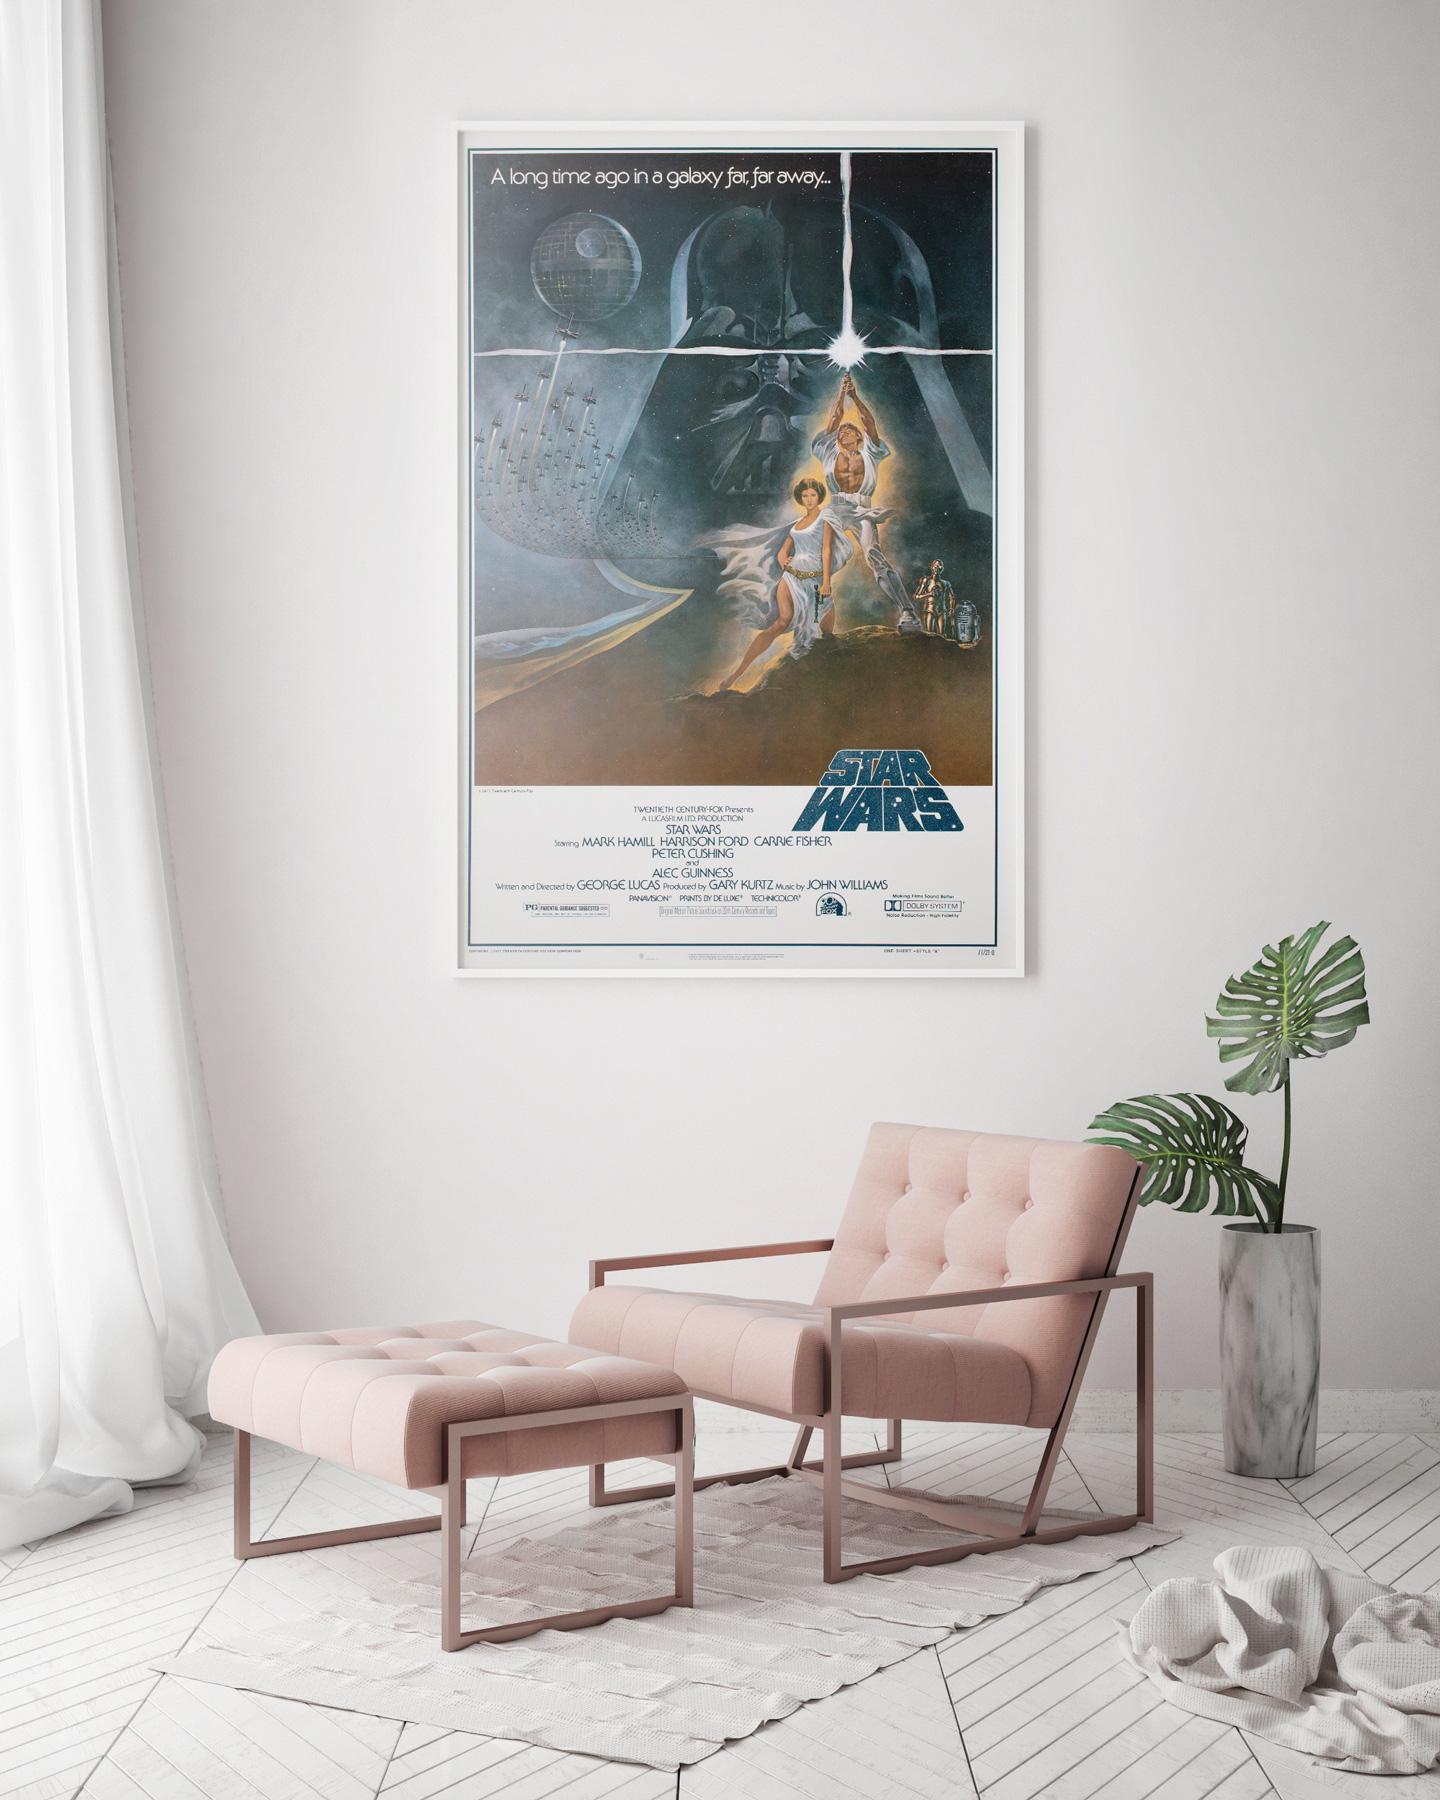 Der fantastische und hoch sammelwürdige 1. Druck des Star Wars US 1 Sheet Style A Posters! Ikonisches Kunstwerk von Tom Jung. Ursprünglich gerollt!

Aufgrund der großen Popularität des Films gab es 1977 vier verschiedene Drucke dieses